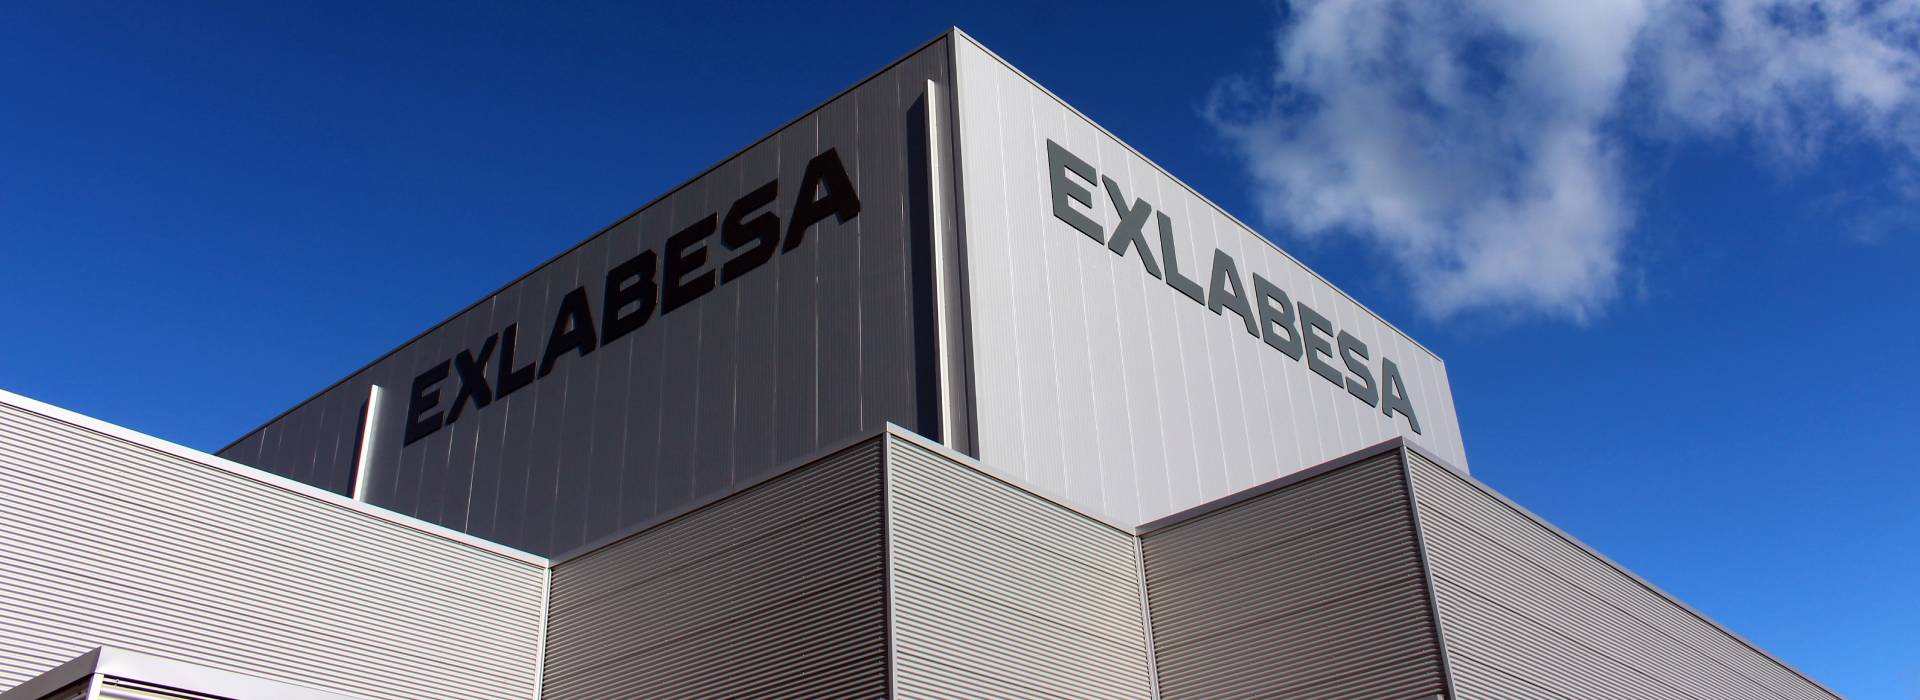 EXLABESA ogłasza przejęcie francuskiej firmy FLANDRIA ALUMINIUM zajmującej się wytłaczaniem profili aluminiowych